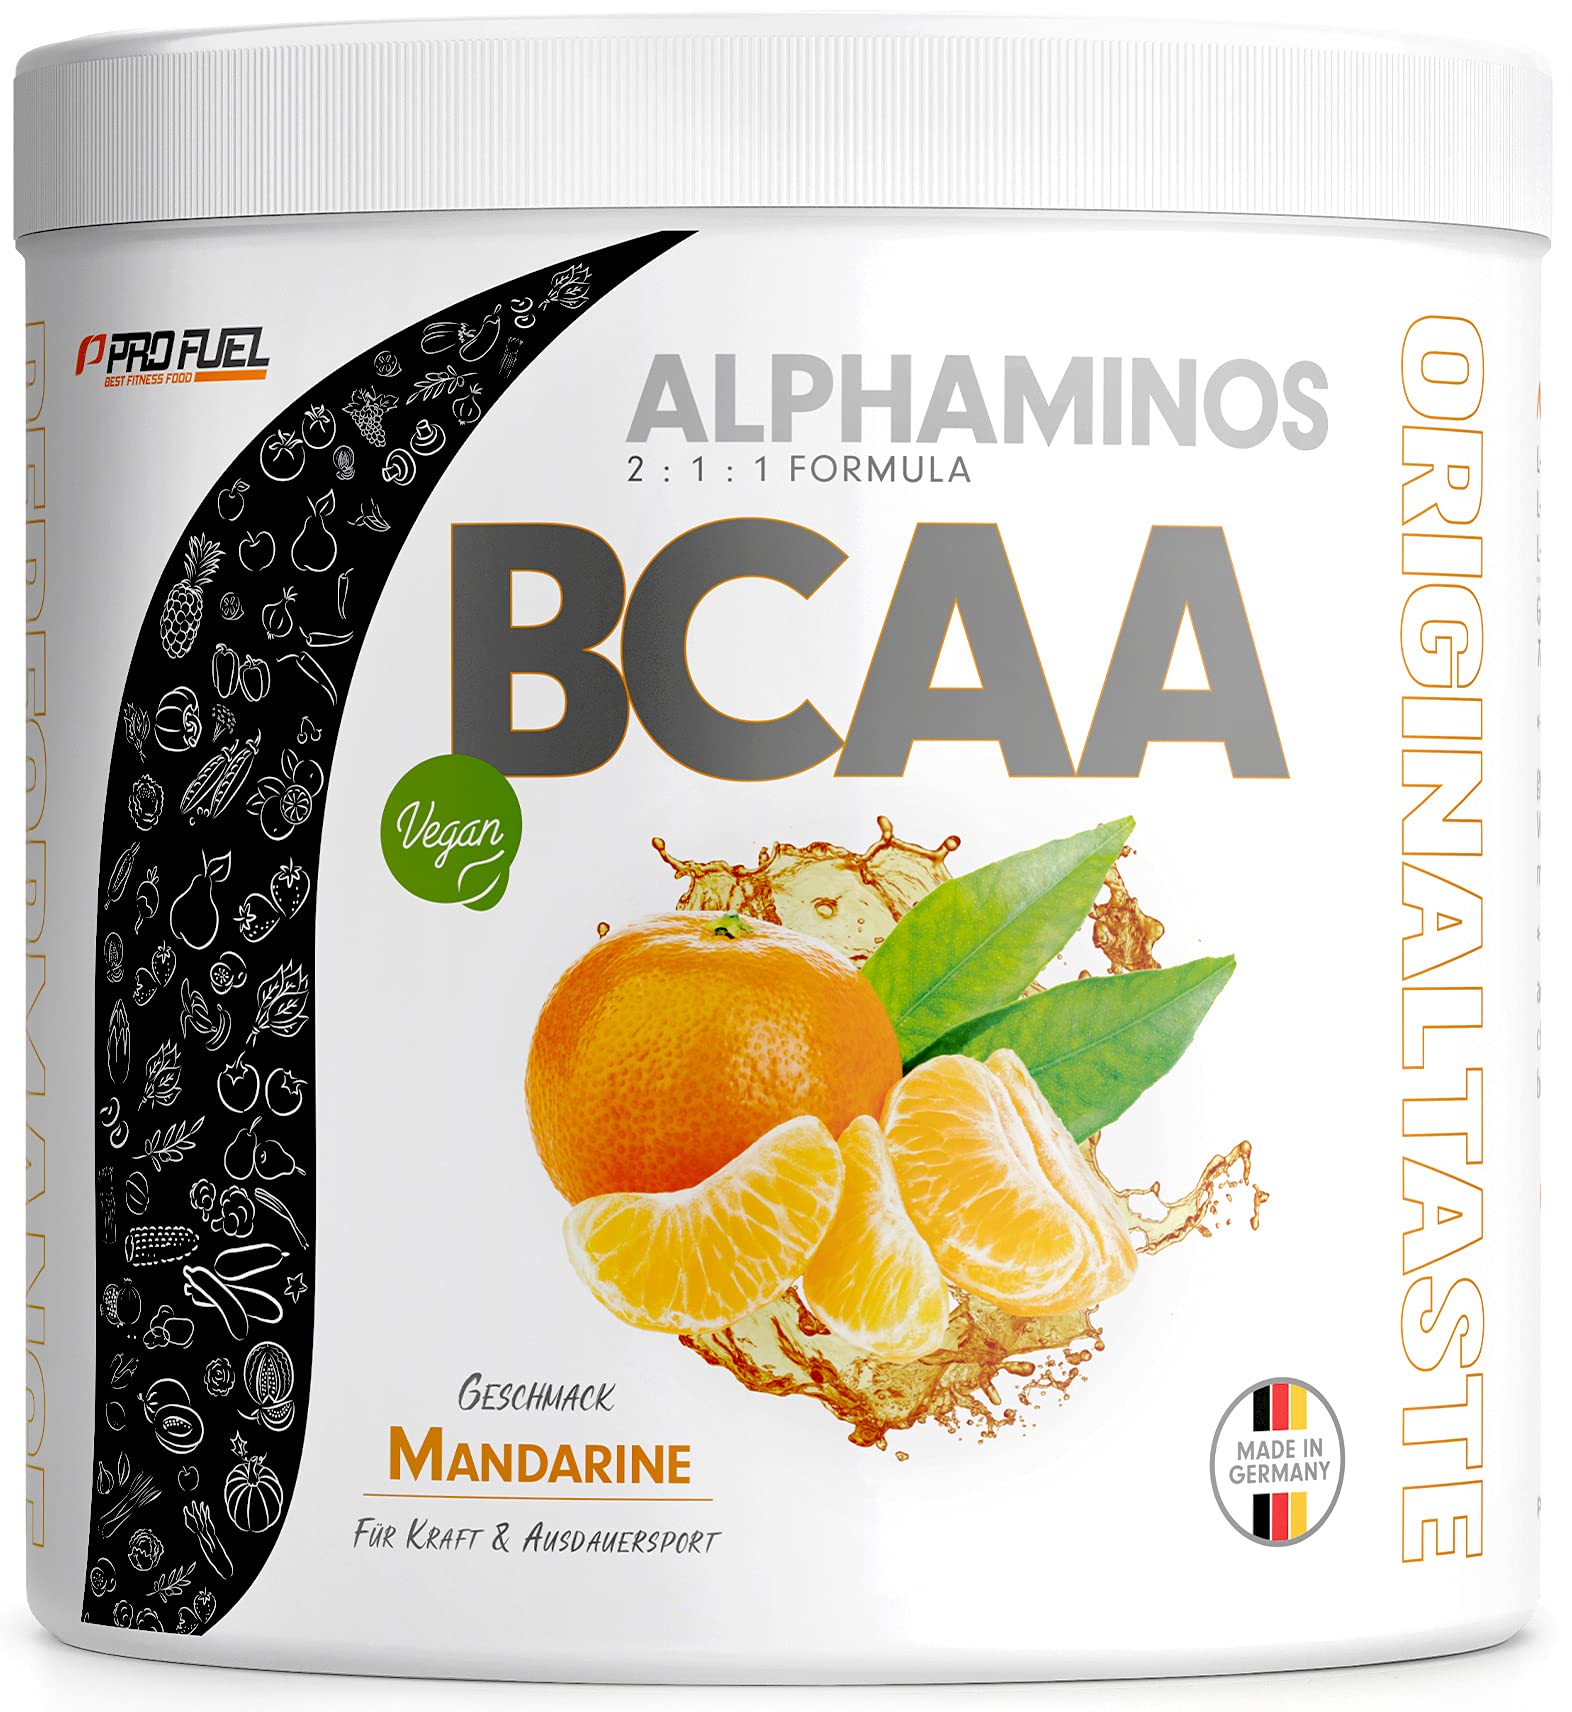 BCAA Pulver 300g Mandarine, TESTSIEGER Alphaminos BCAA 2:1:1 Drink, unfassbar leckerer Geschmack, Essentielle Aminosäuren Leucin, Isoleucin & Valin, 100% vegan - Top Löslichkeit - Laborgeprüft